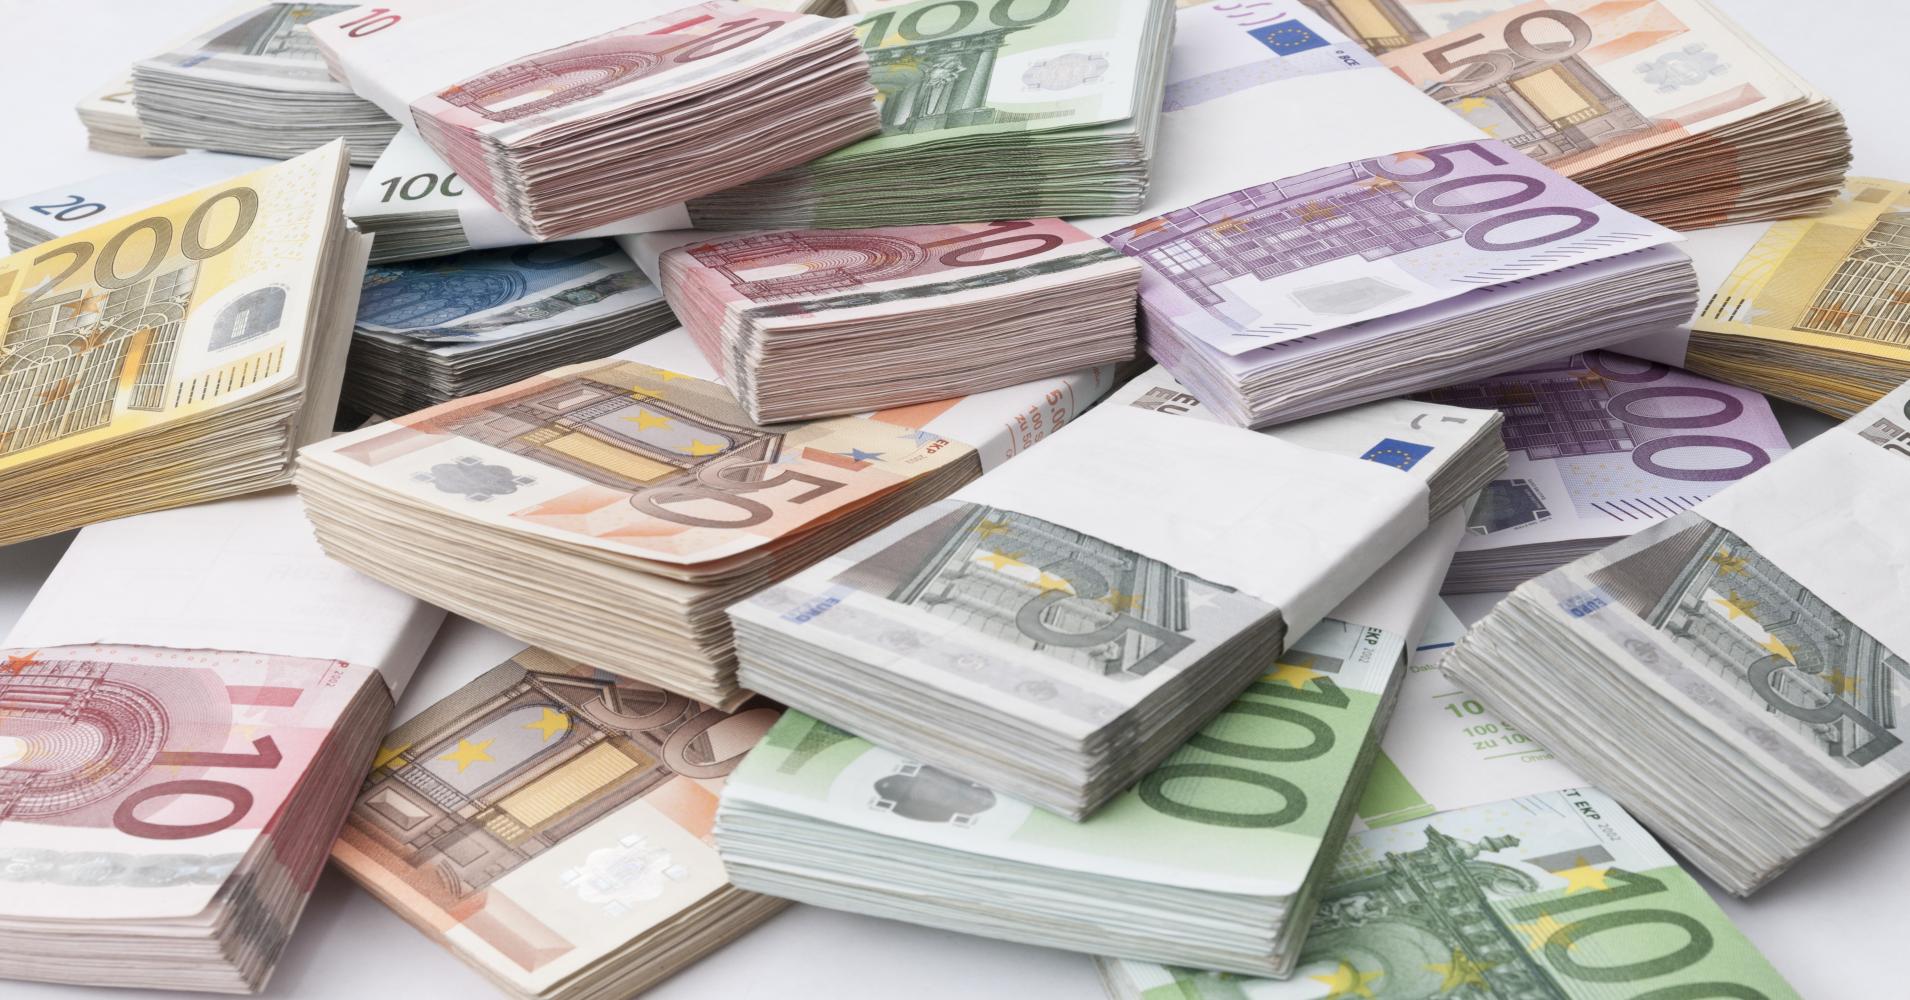 BUHAR OLAN 144 MİLYON EURO NEREDE?